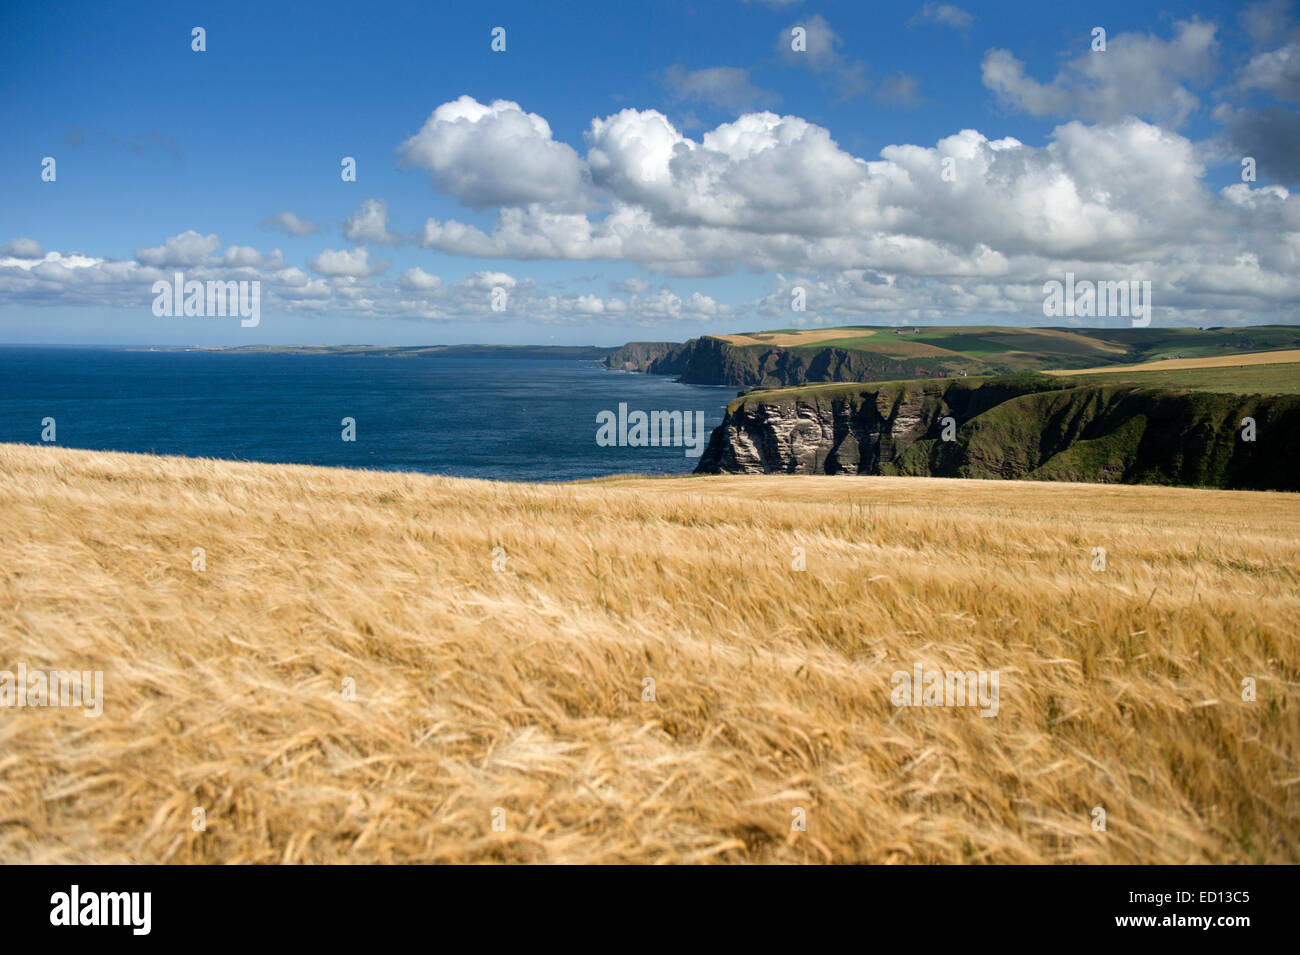 Un champ d'orge doré miroitant dans la brise sur la côte entre Banffshire Troup Head et Downie Bay au nord est de l'Écosse Banque D'Images